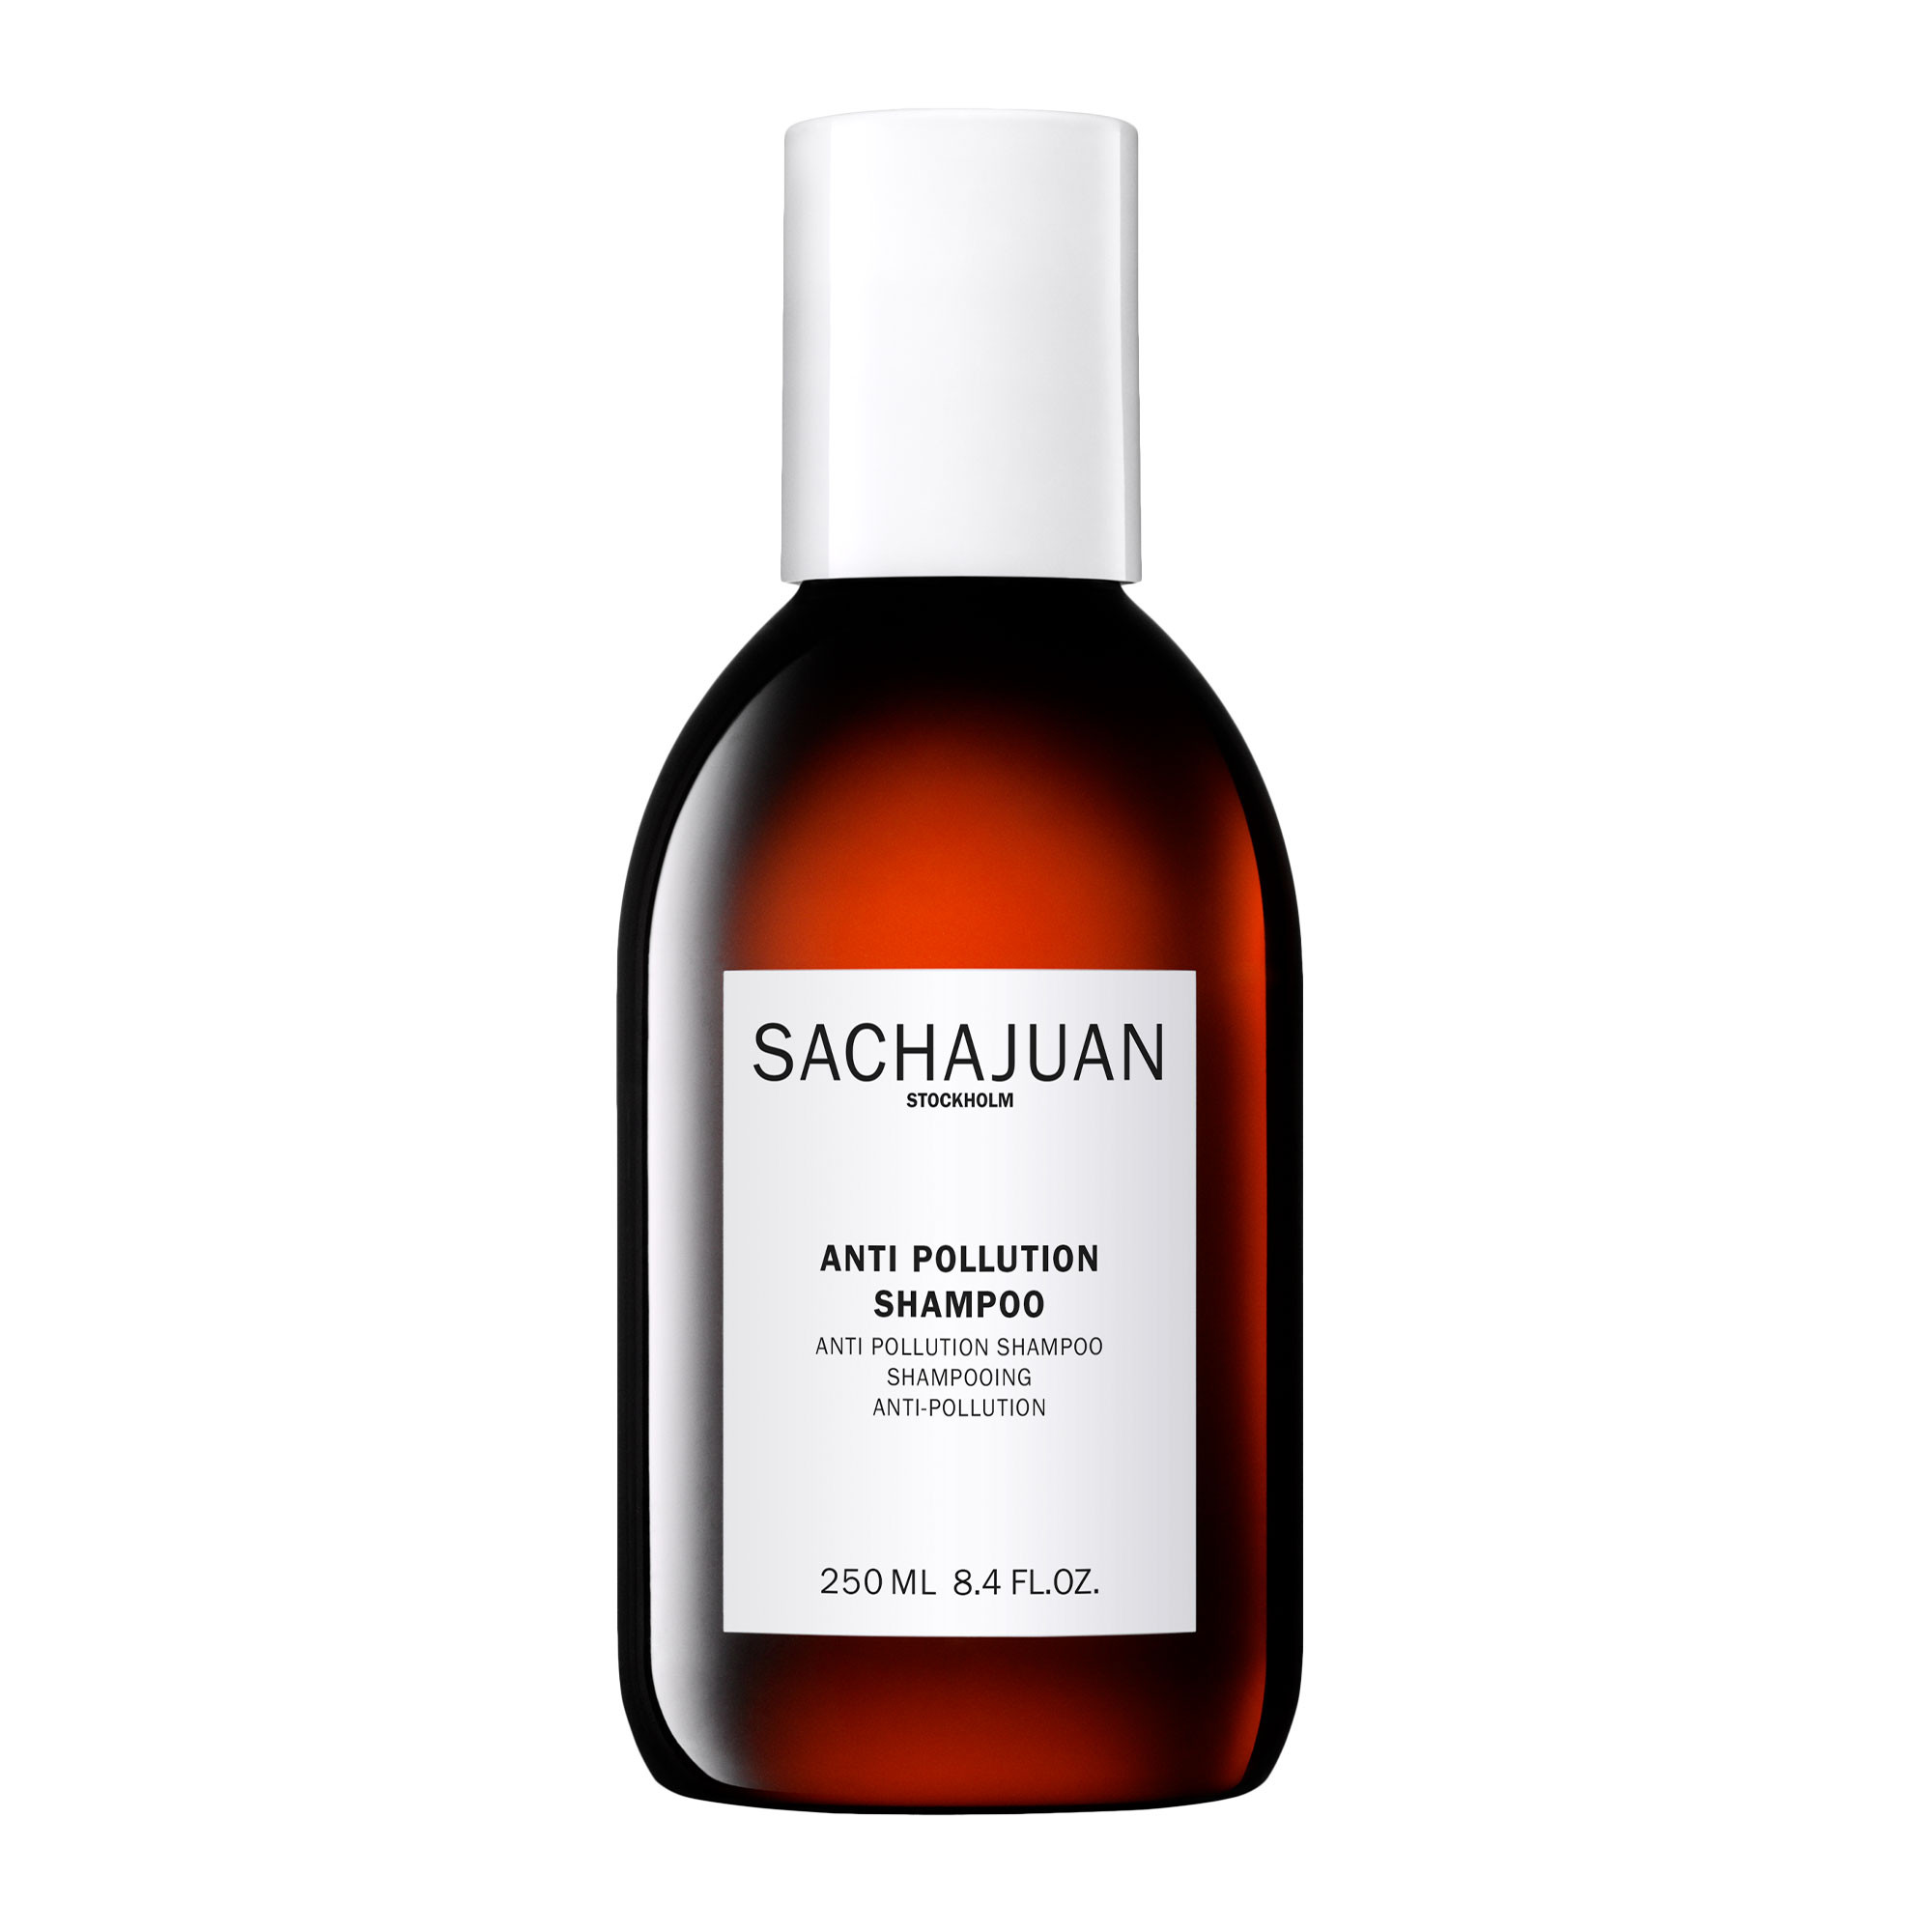 Sachajuan Anti Pollution Shampoo Шампунь-барьер от негативного воздействия окружающей среды и тусколости волос